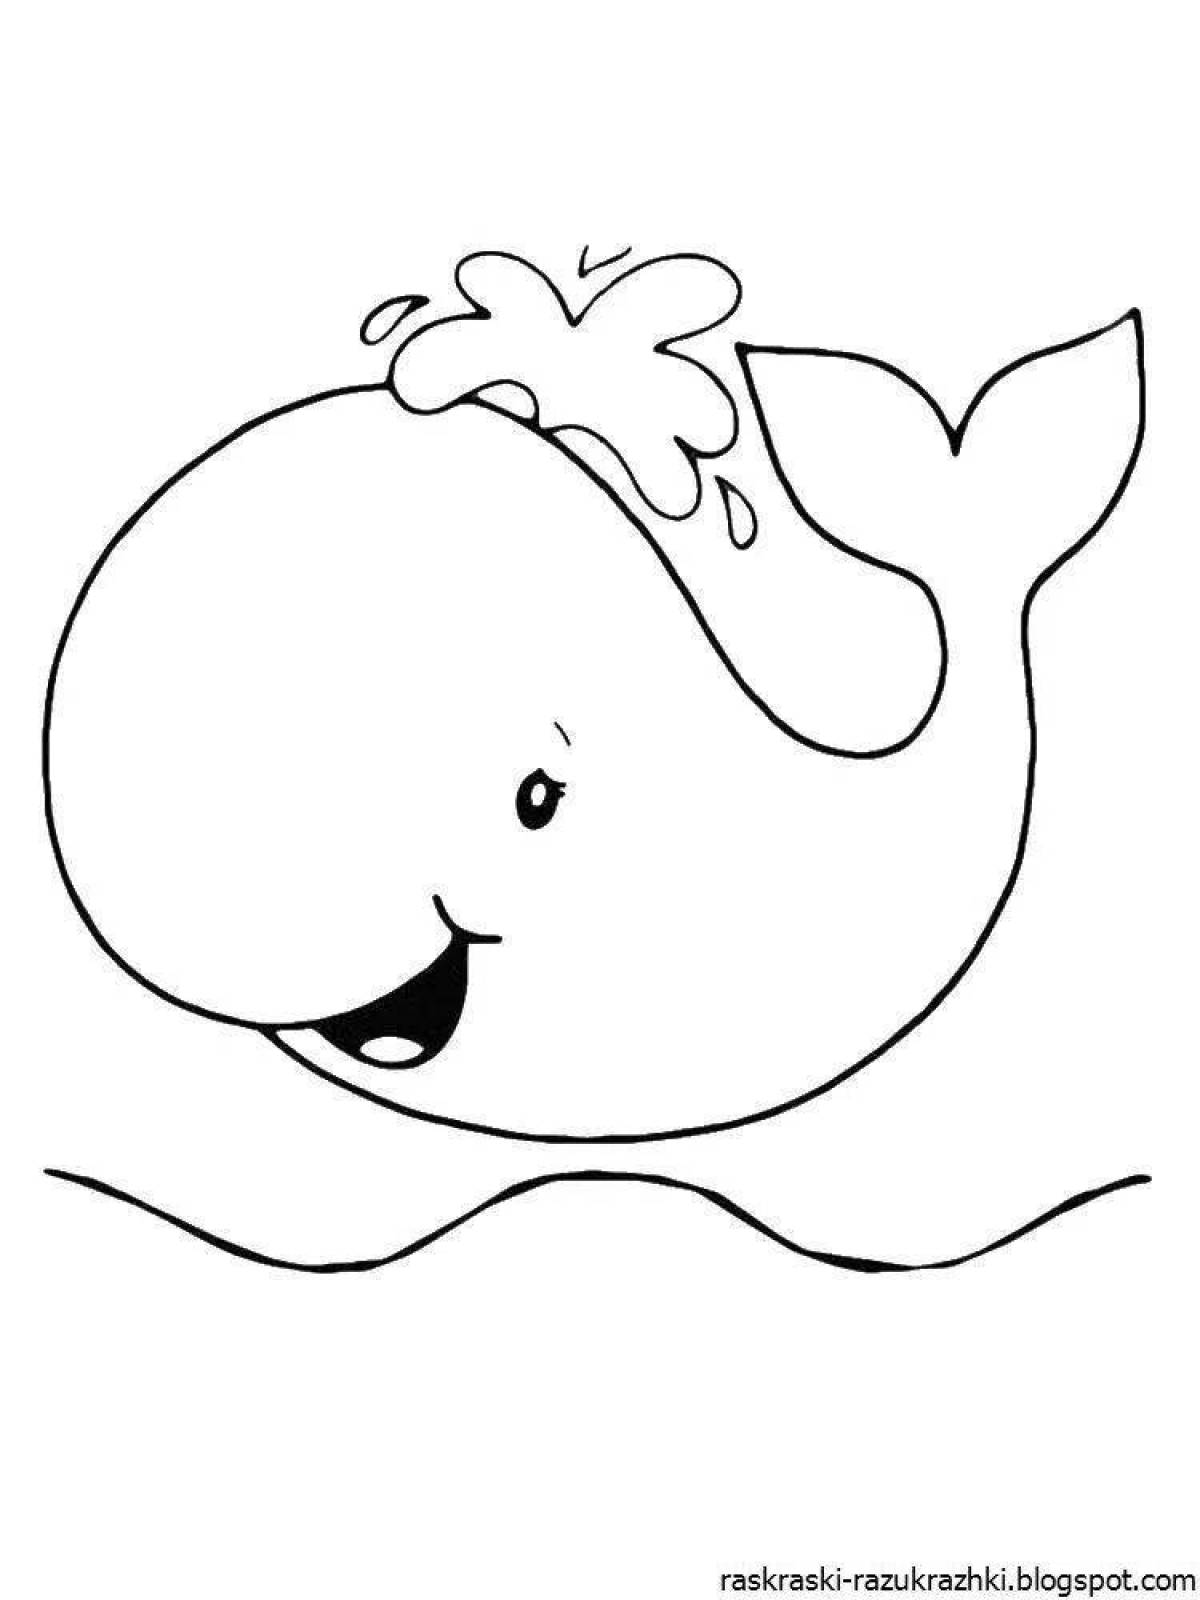 Цветная взрывоопасная страница раскраски китов для детей